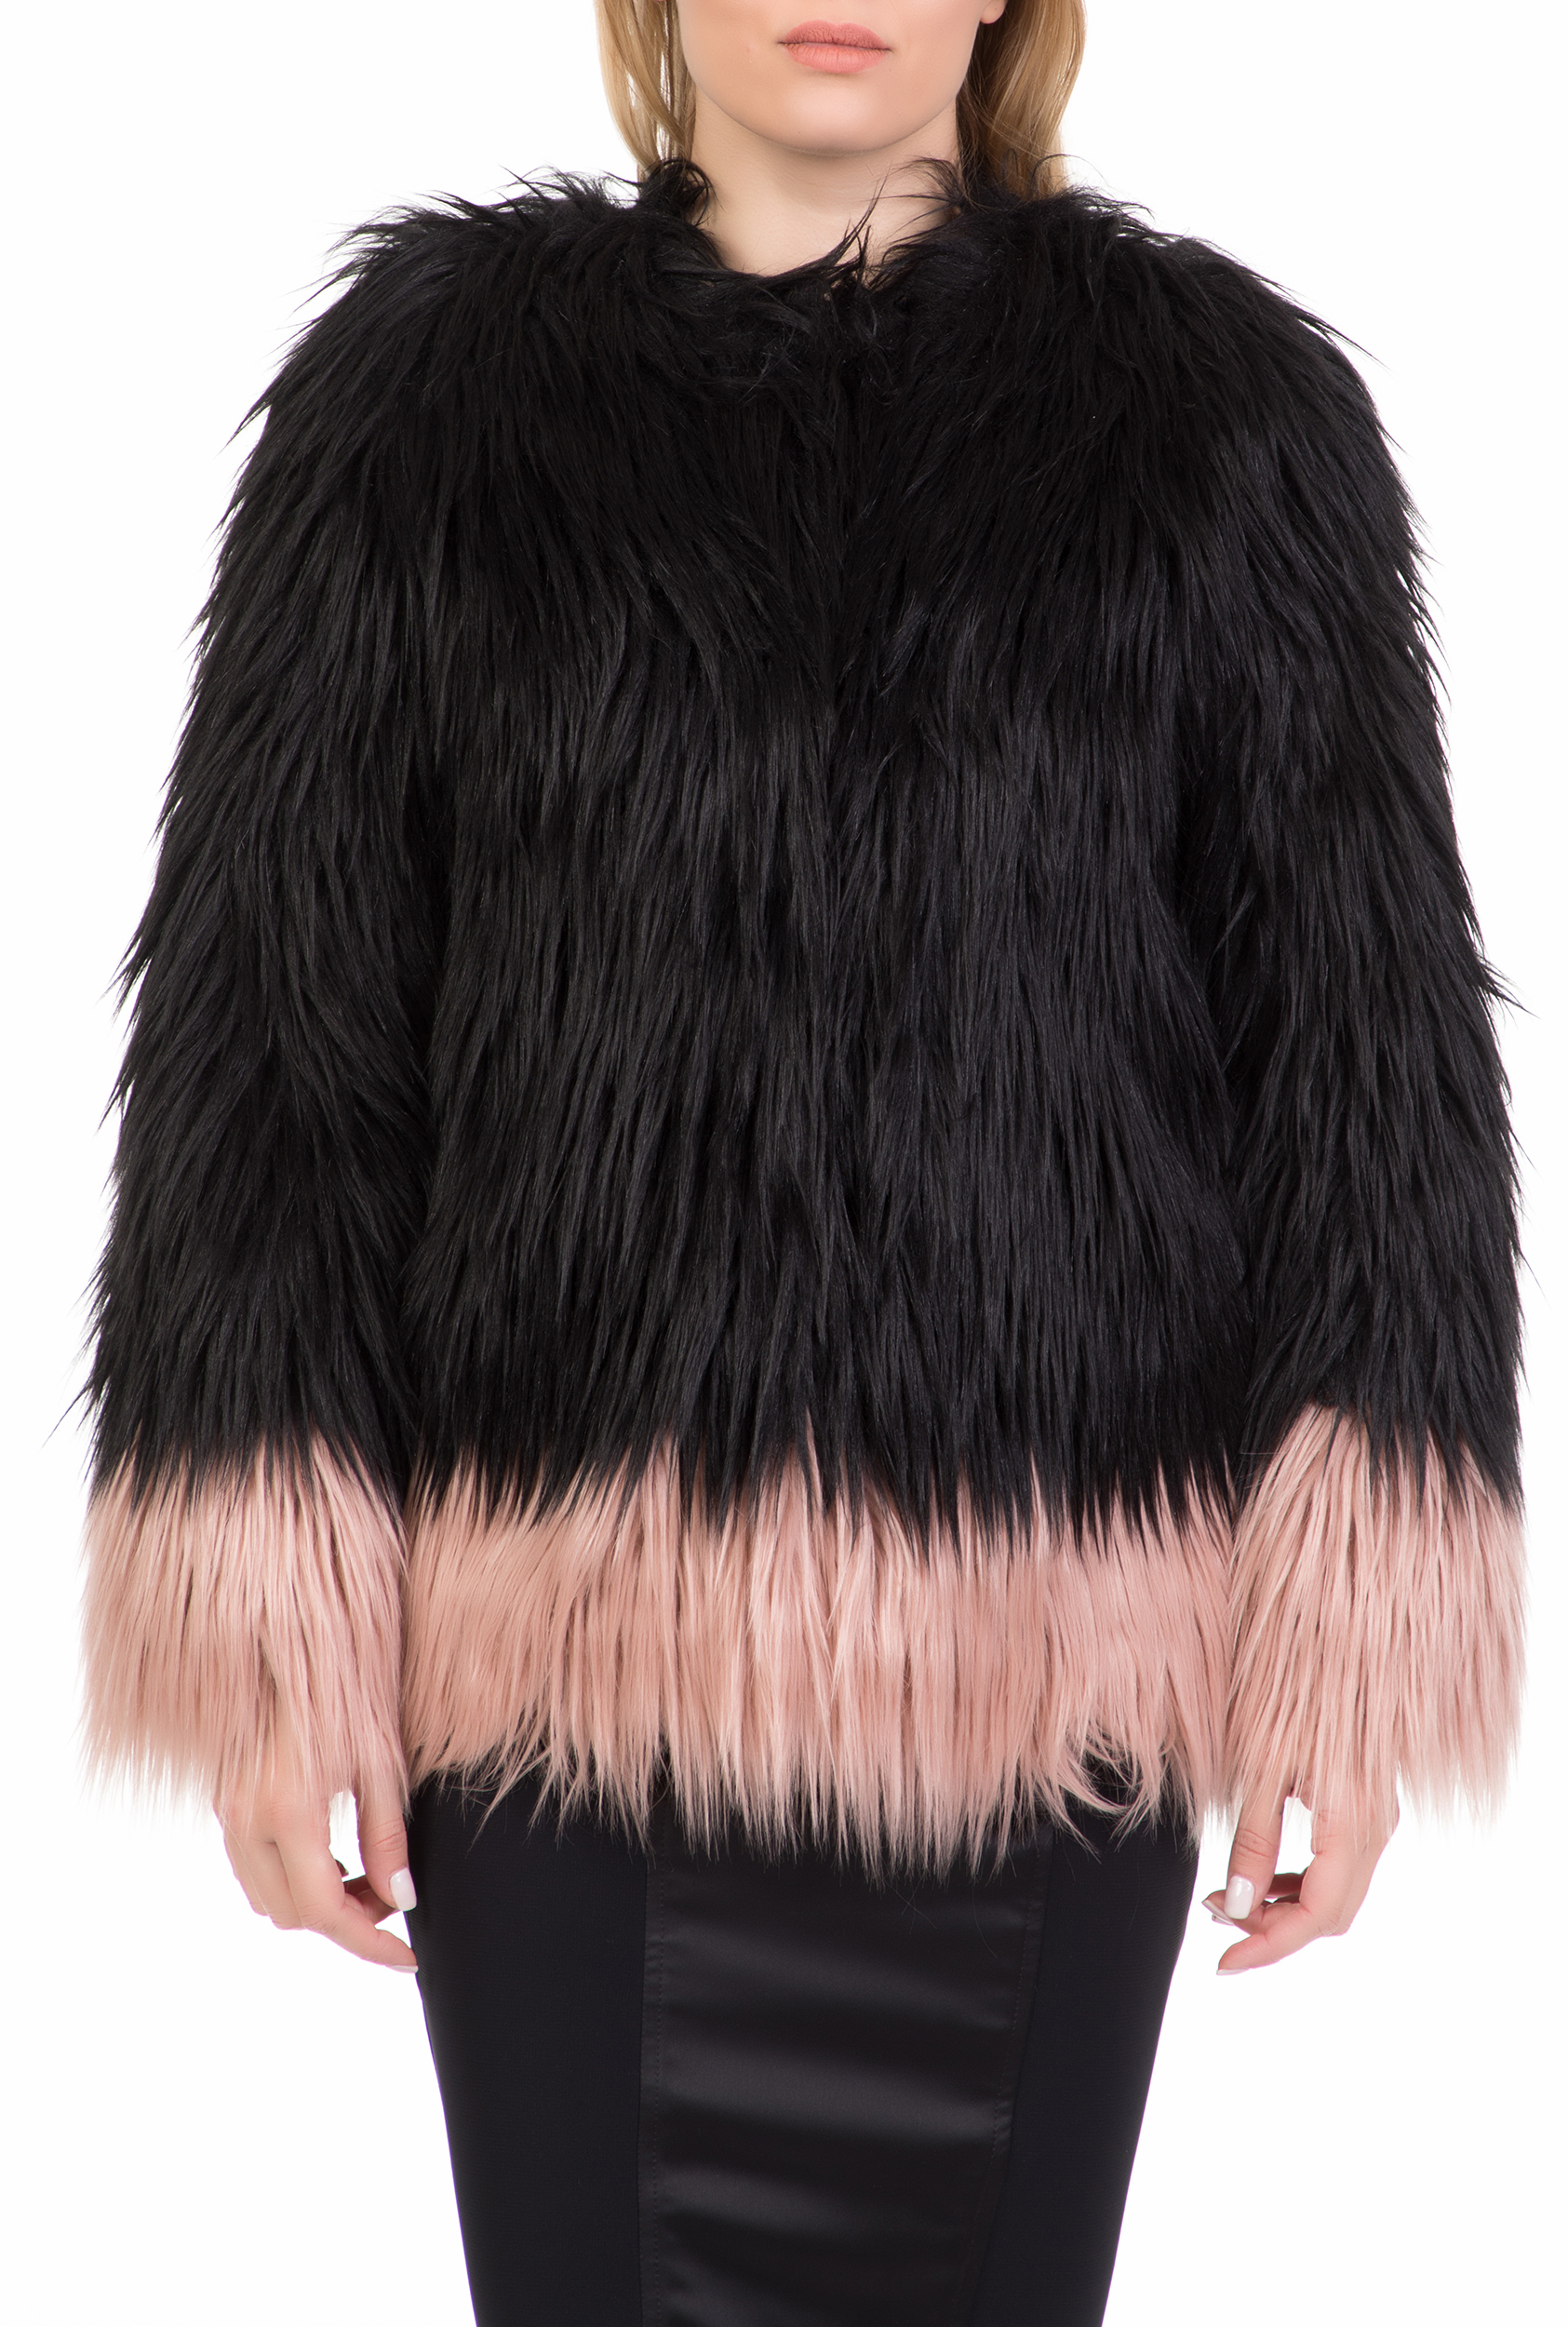 NENETTE – Γυναικειο γουνινο jacket NENETTE μαυρο-ροζ